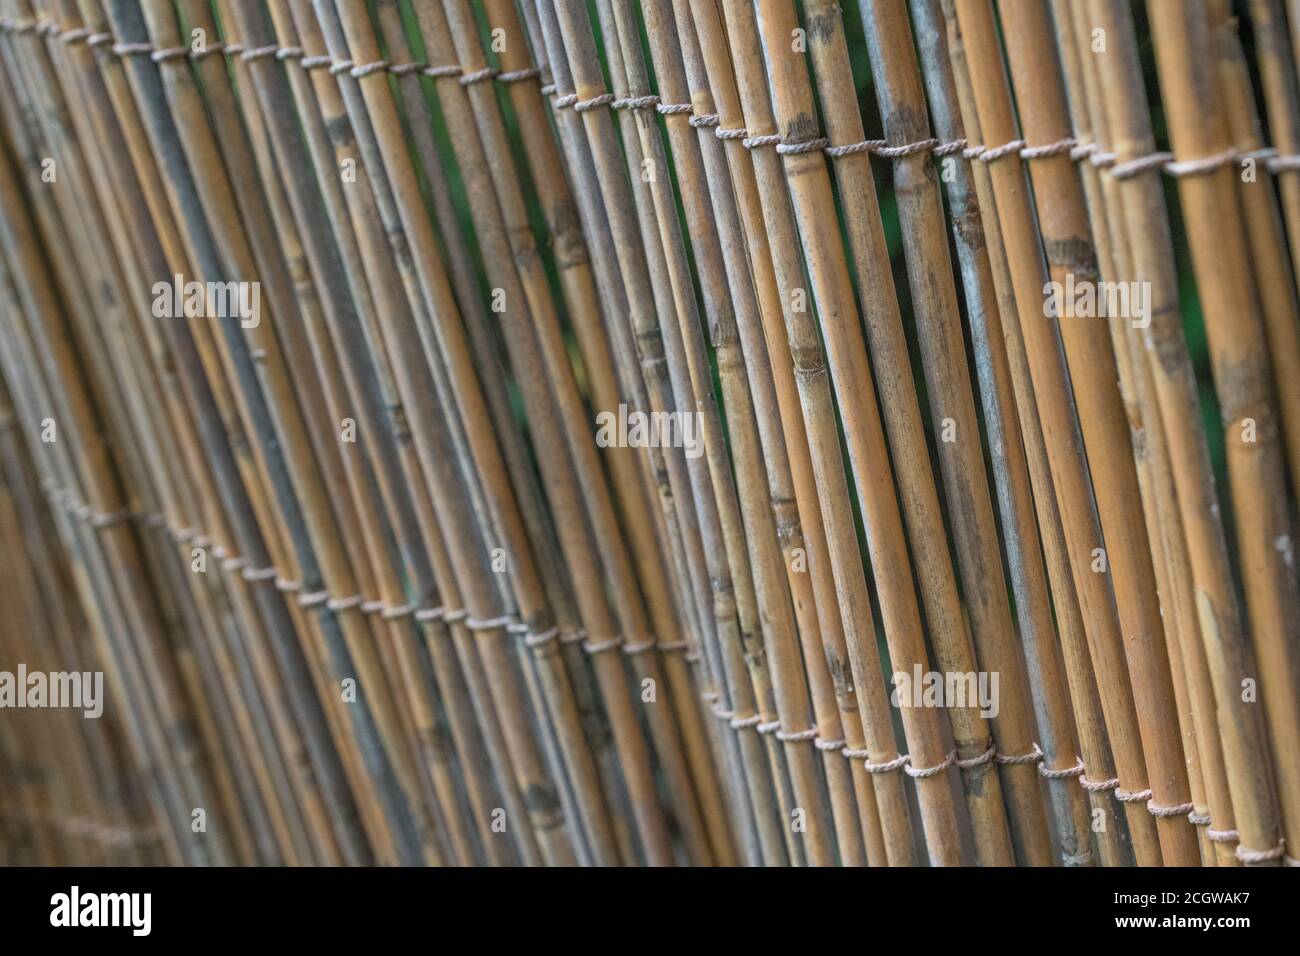 Sezione verticale della schermatura naturale del giardino di canna, che mostra le tracce di decadimento precoce di canna. Piacevole sfondo di texture naturale o metafora per il giardinaggio. Foto Stock